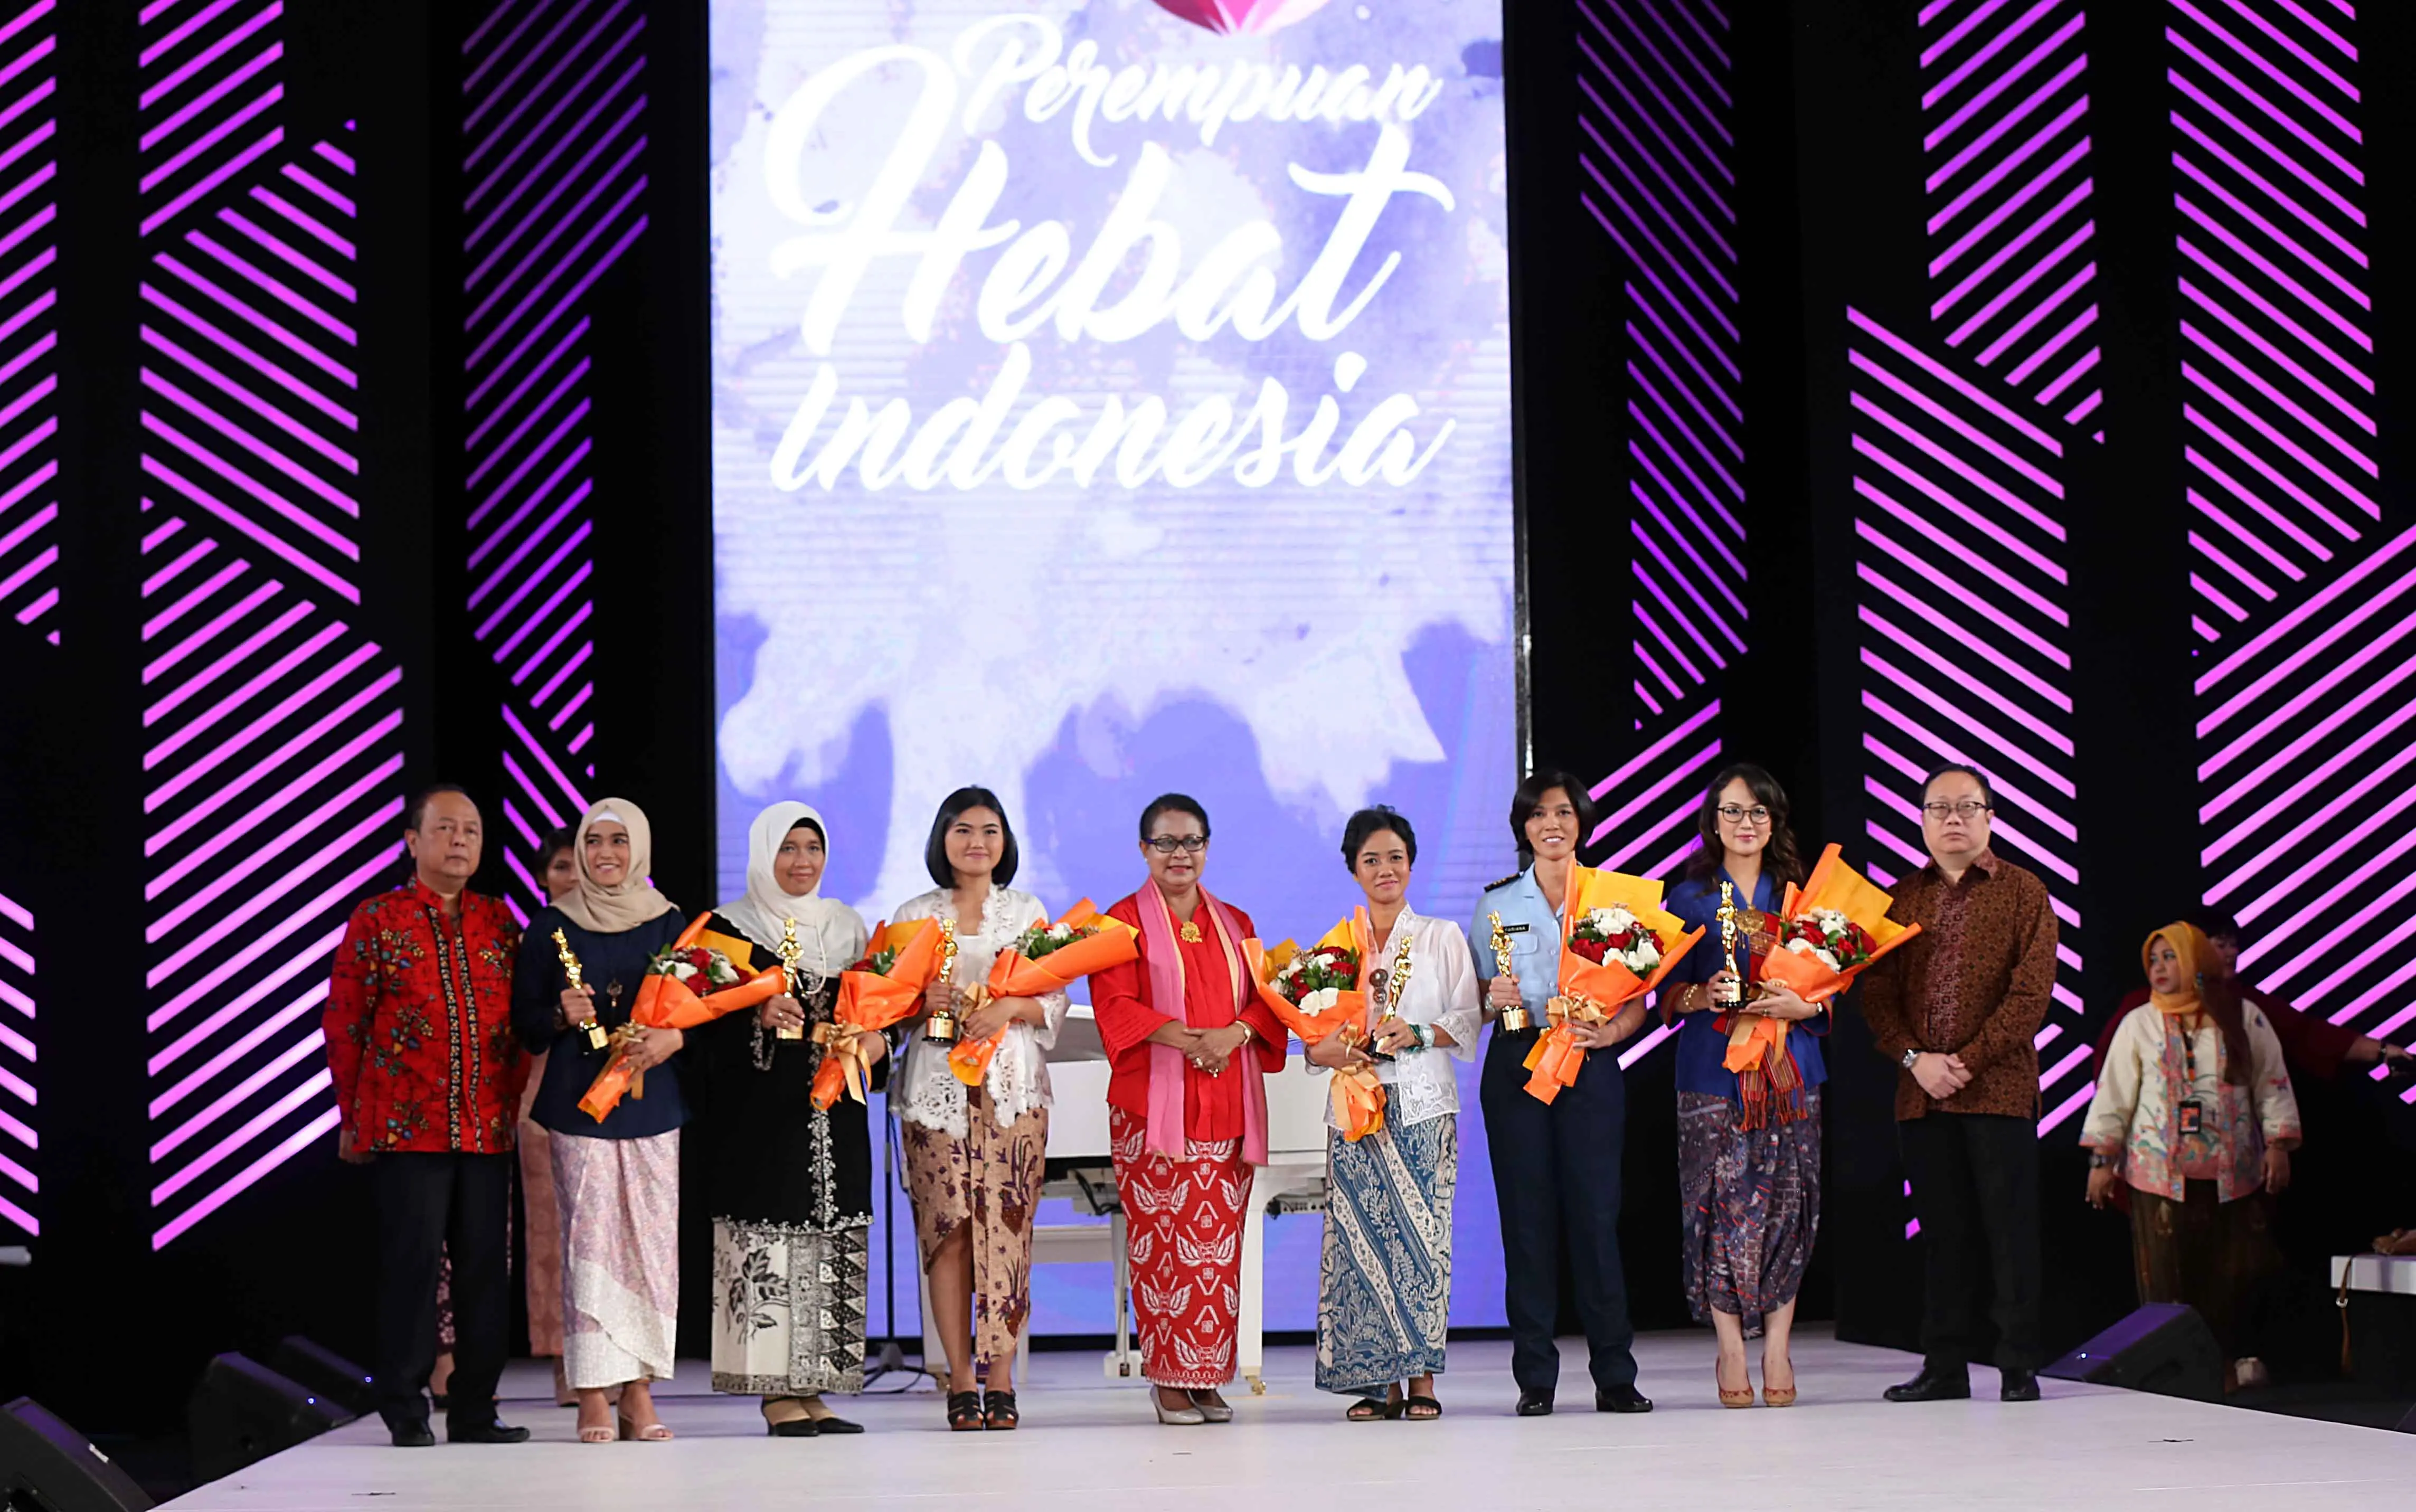 Anugerah Perempuan Hebat Indonesia 2017 (Bintang.com/Yunan Nasution)